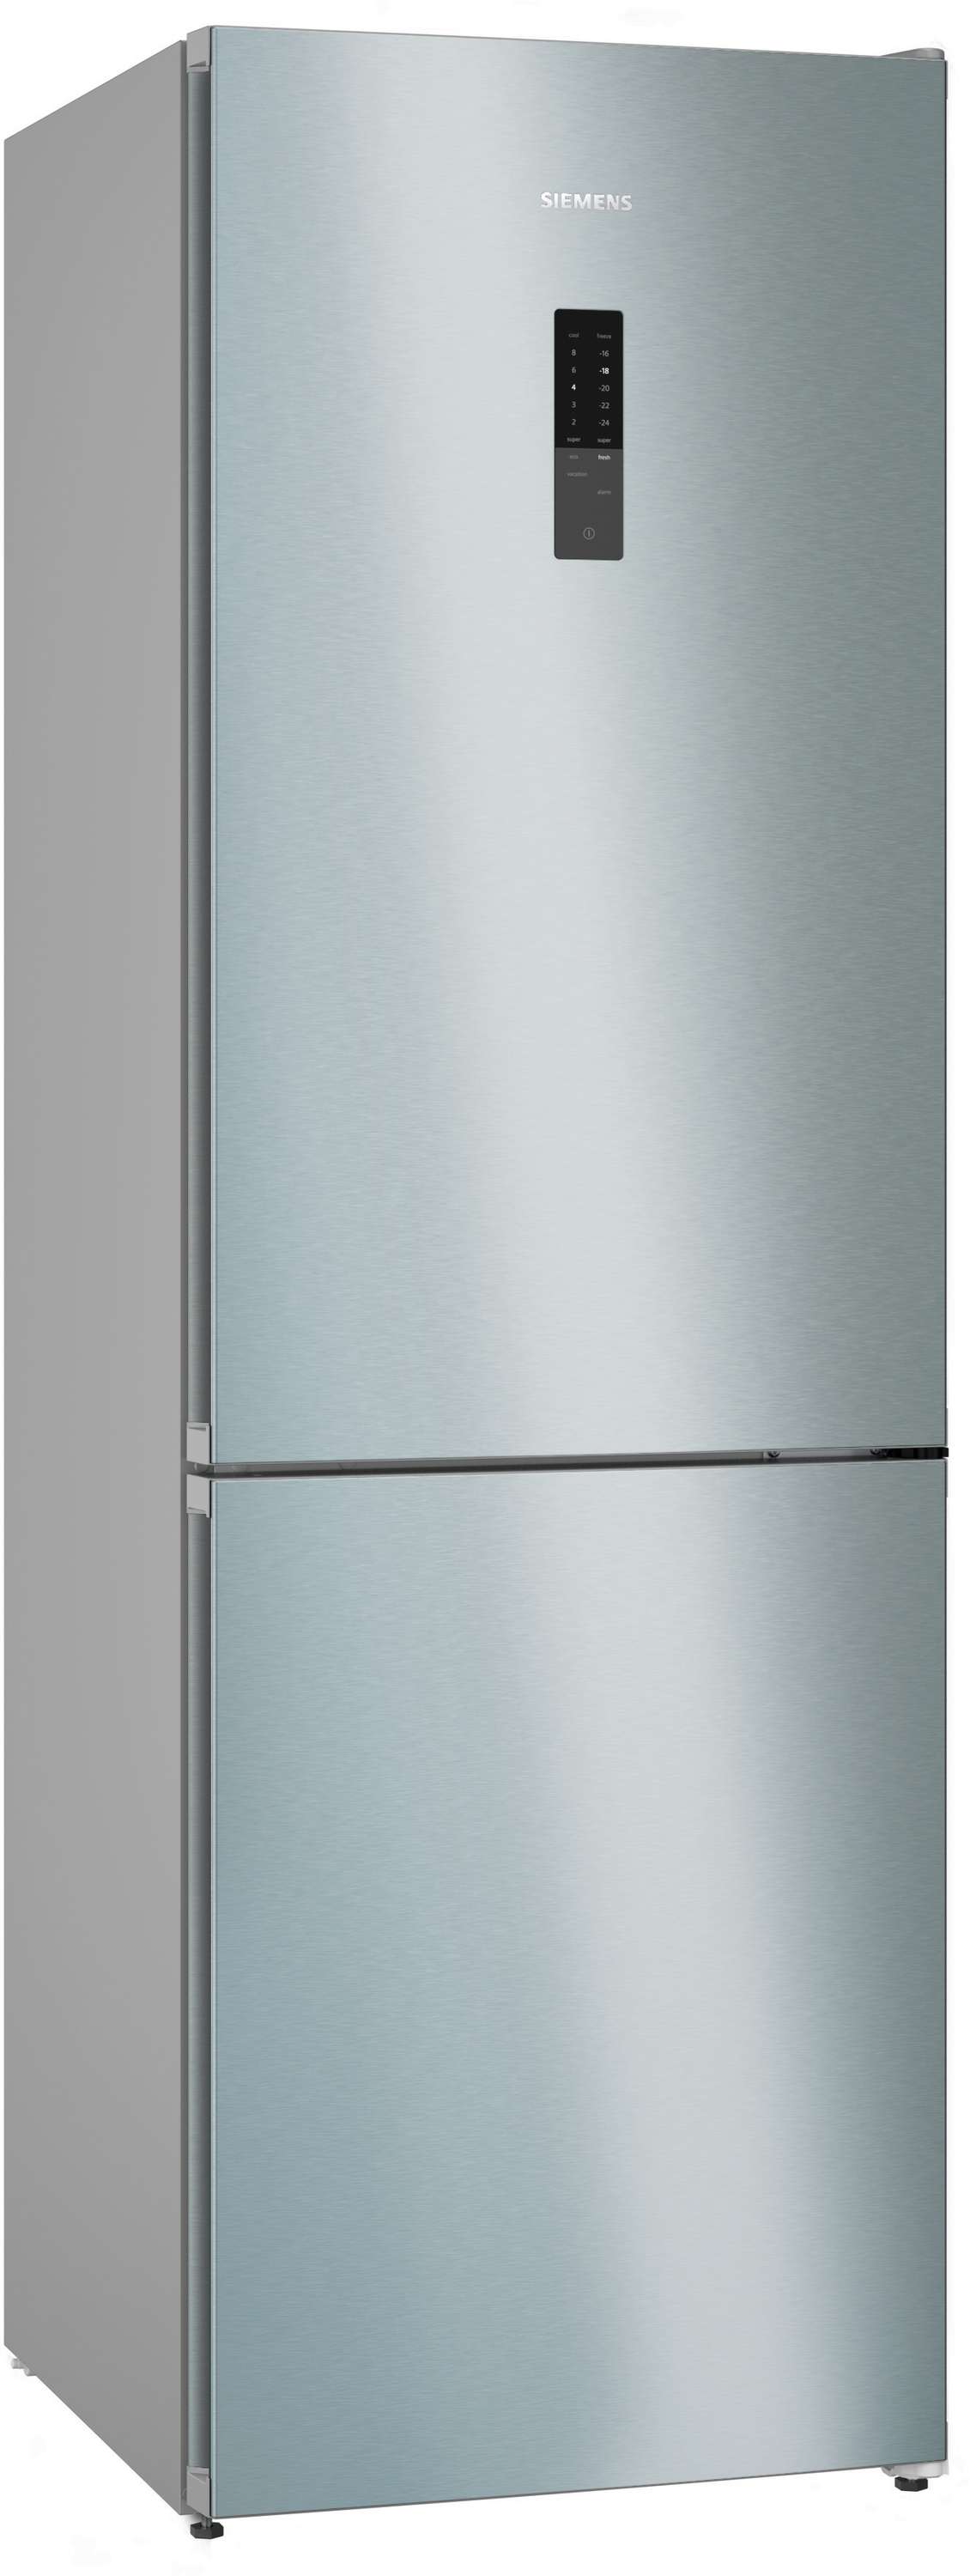 Siemens KG36NXIDF Freistehende Kühl-Gefrier-Kombination mit Gefrierbereich